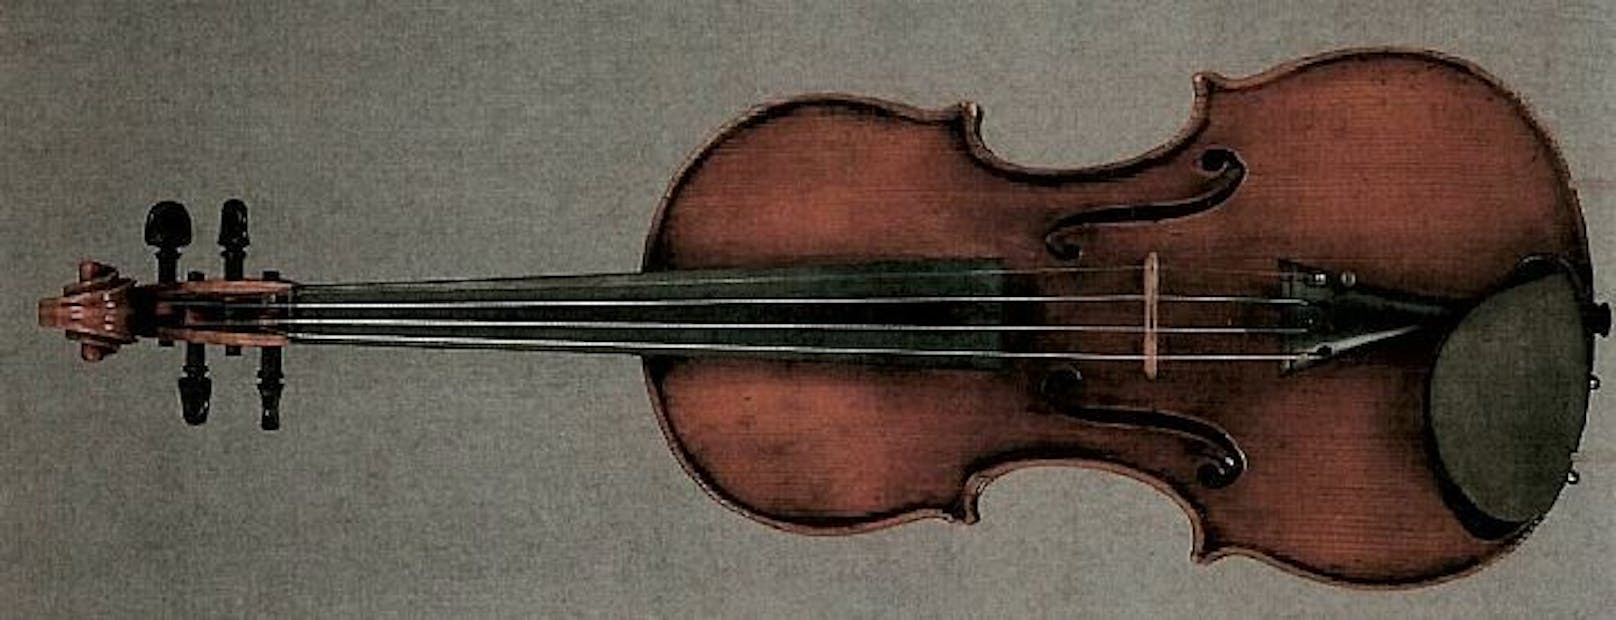 Diese Geige im Wert von 80.000 Euro wurde im Zug vergessen.